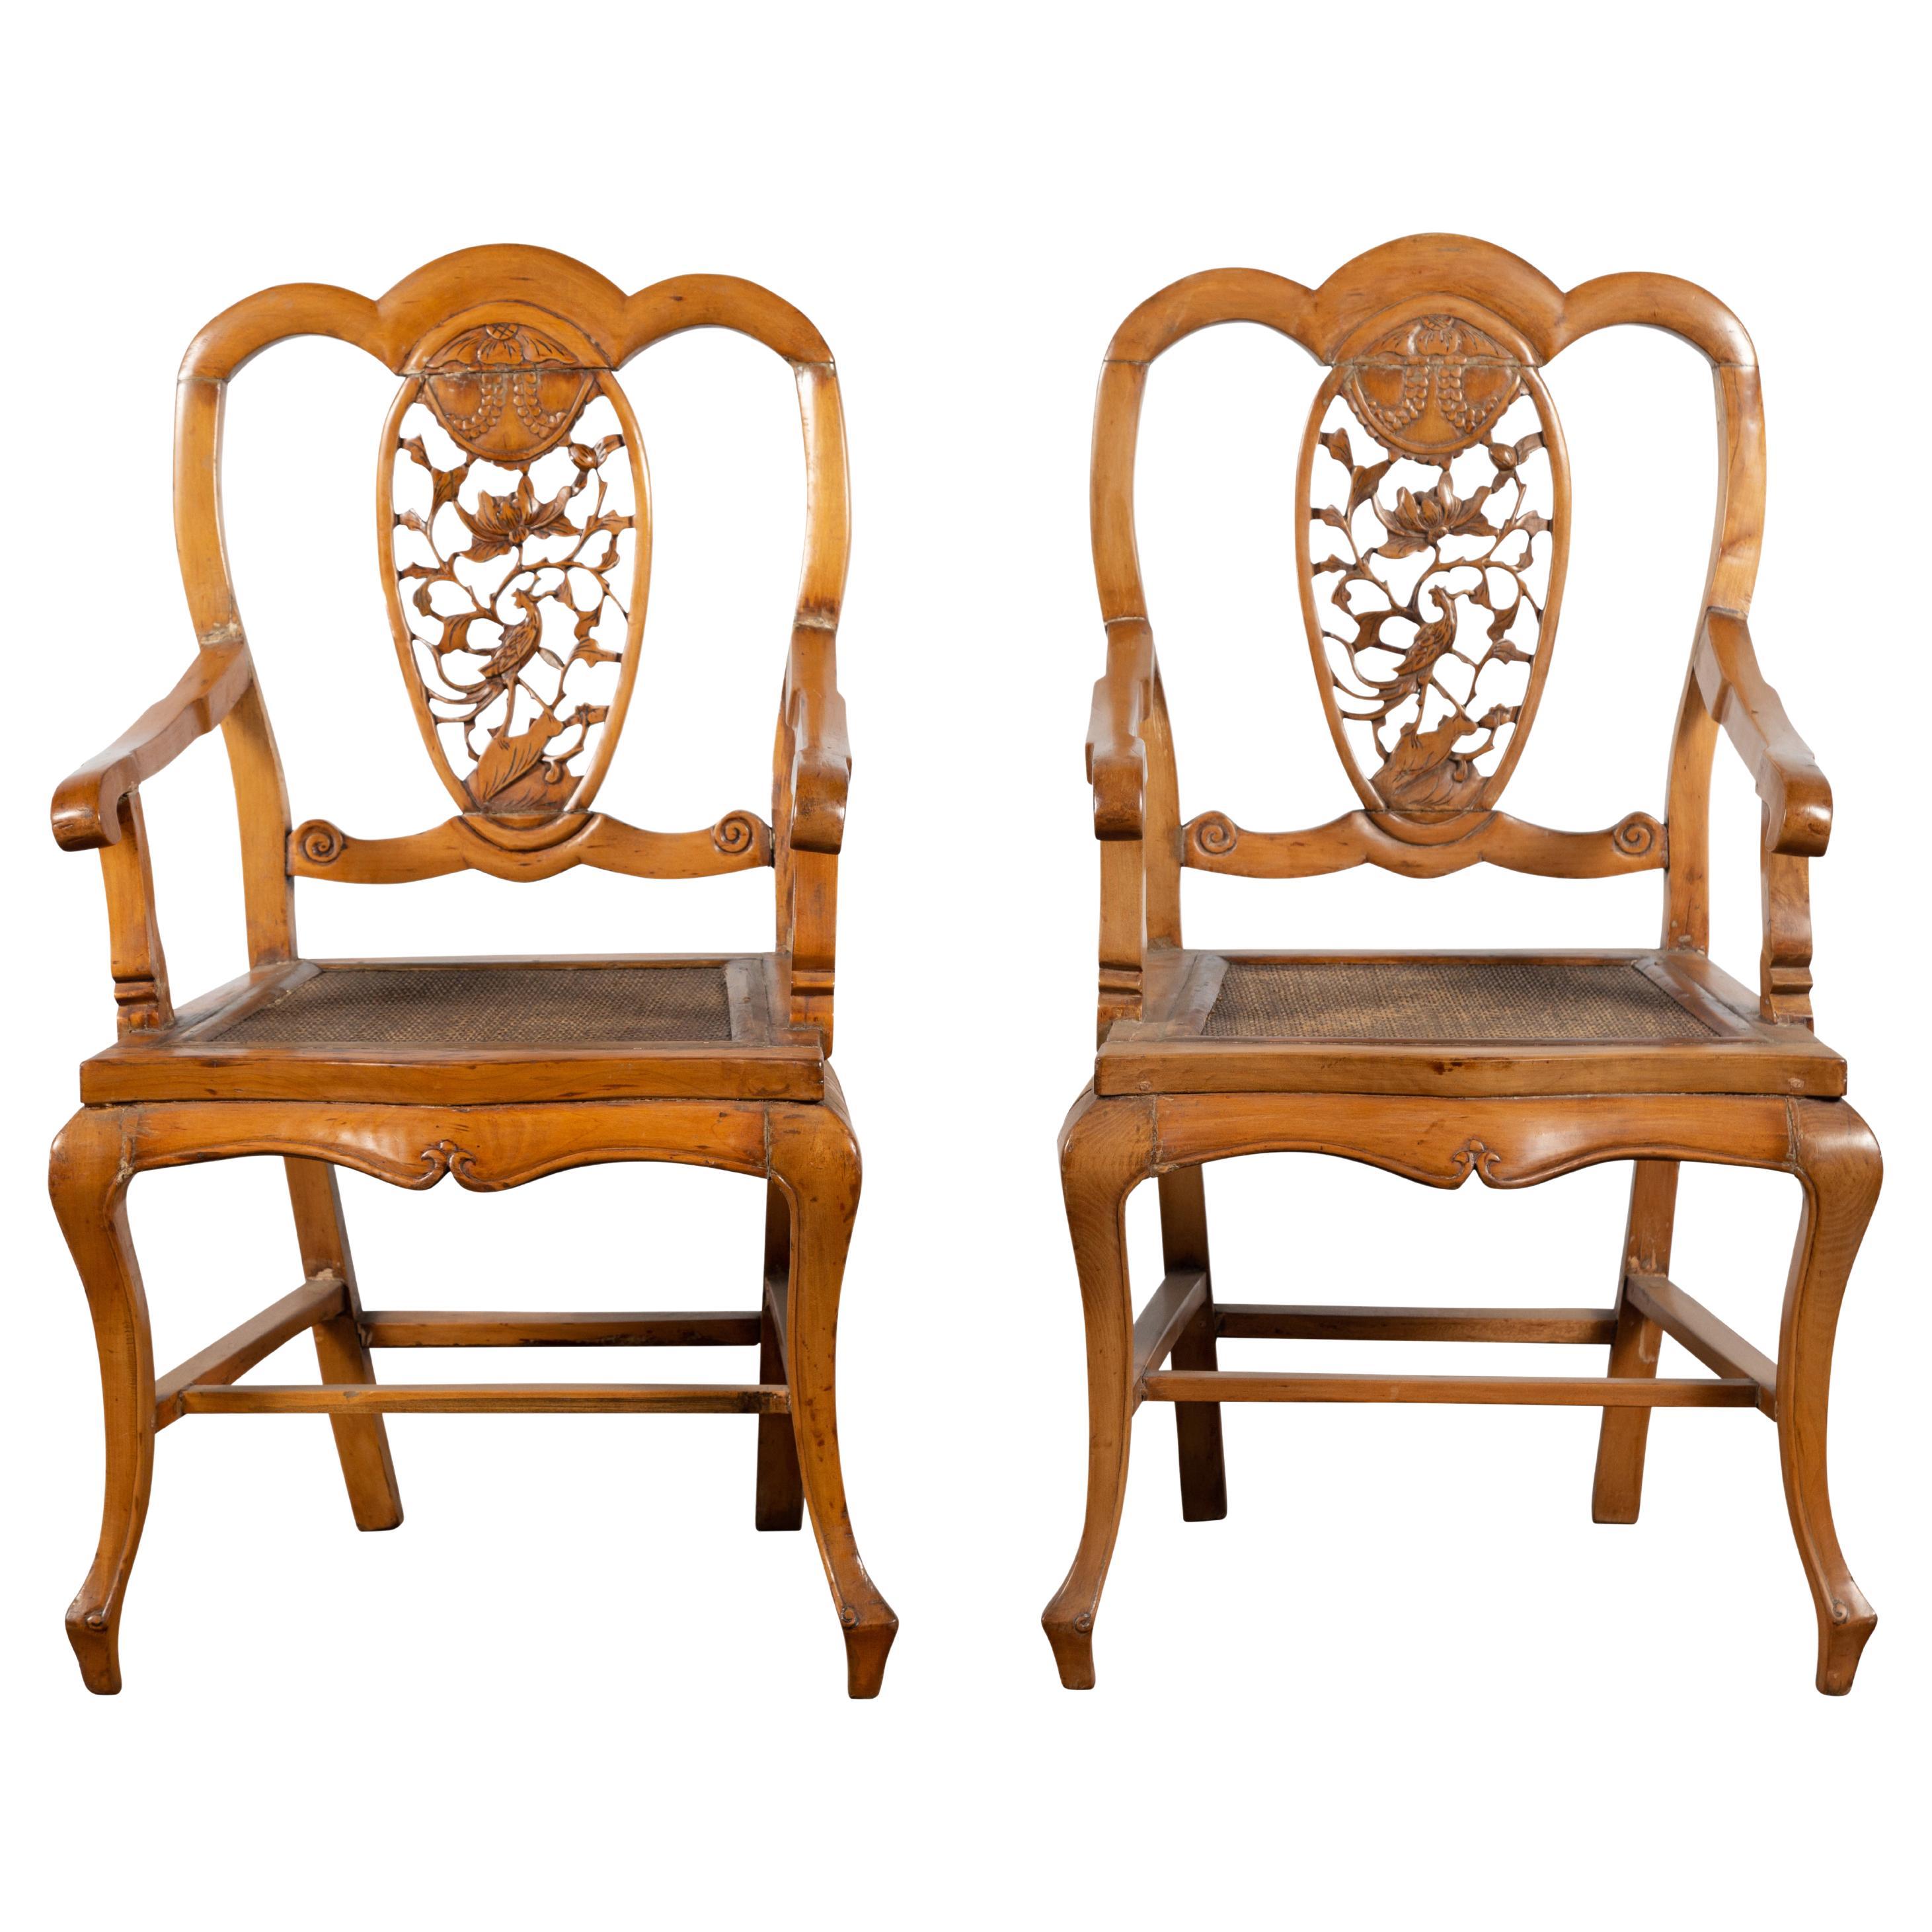 Chinesischer Sessel aus der Qing Dynasty des 19. Jahrhunderts mit geschnitztem Medaillon, einzeln verkauft